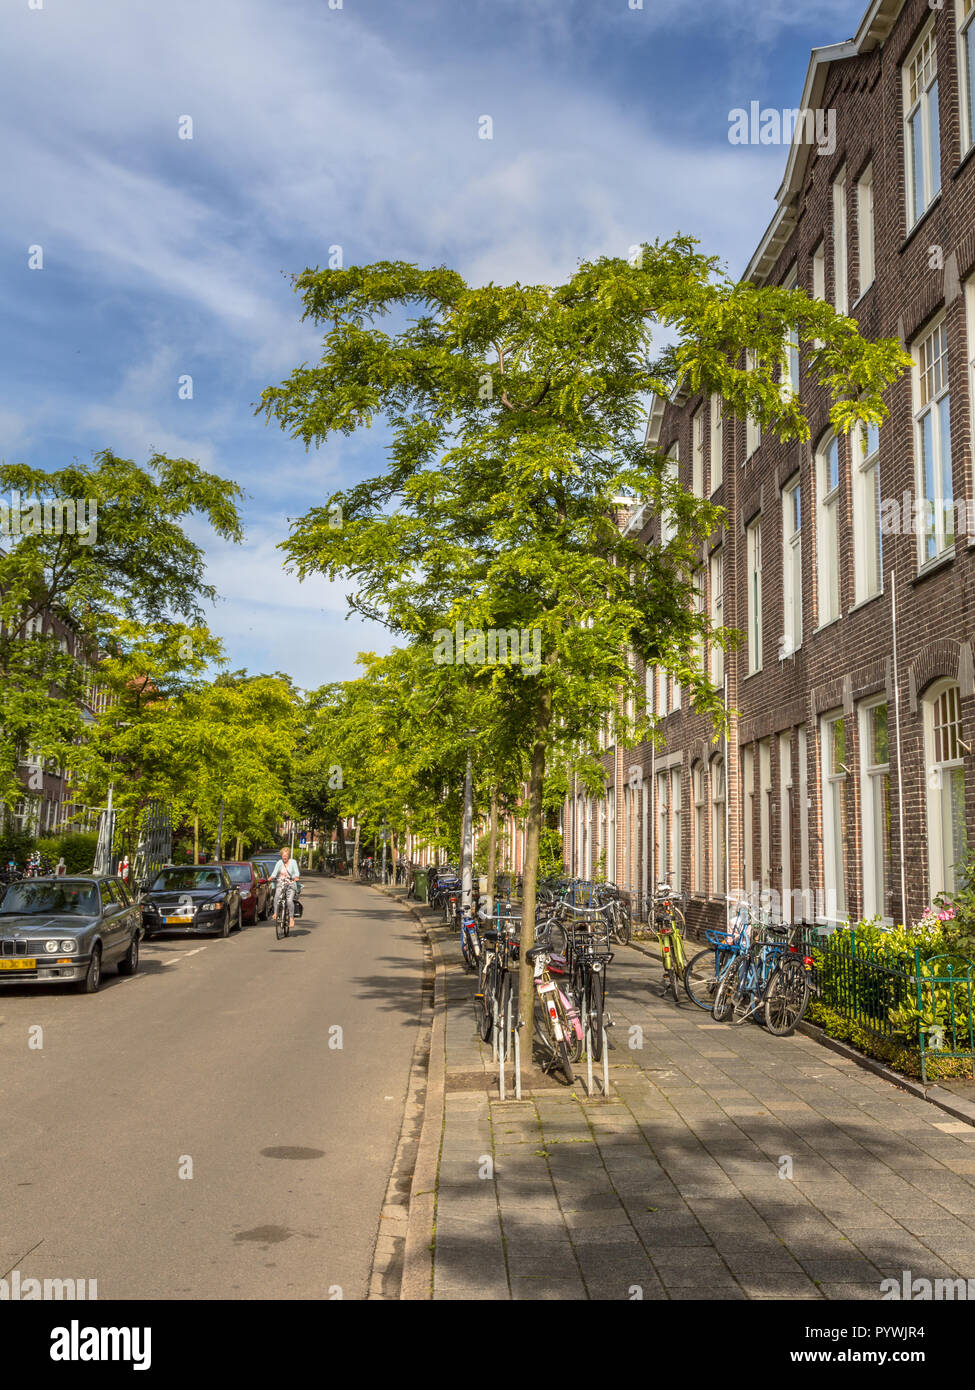 Les bâtiments historiques de la rue en néerlandais avec de vieilles maisons datant de 1910 à groningen Pays-Bas Banque D'Images